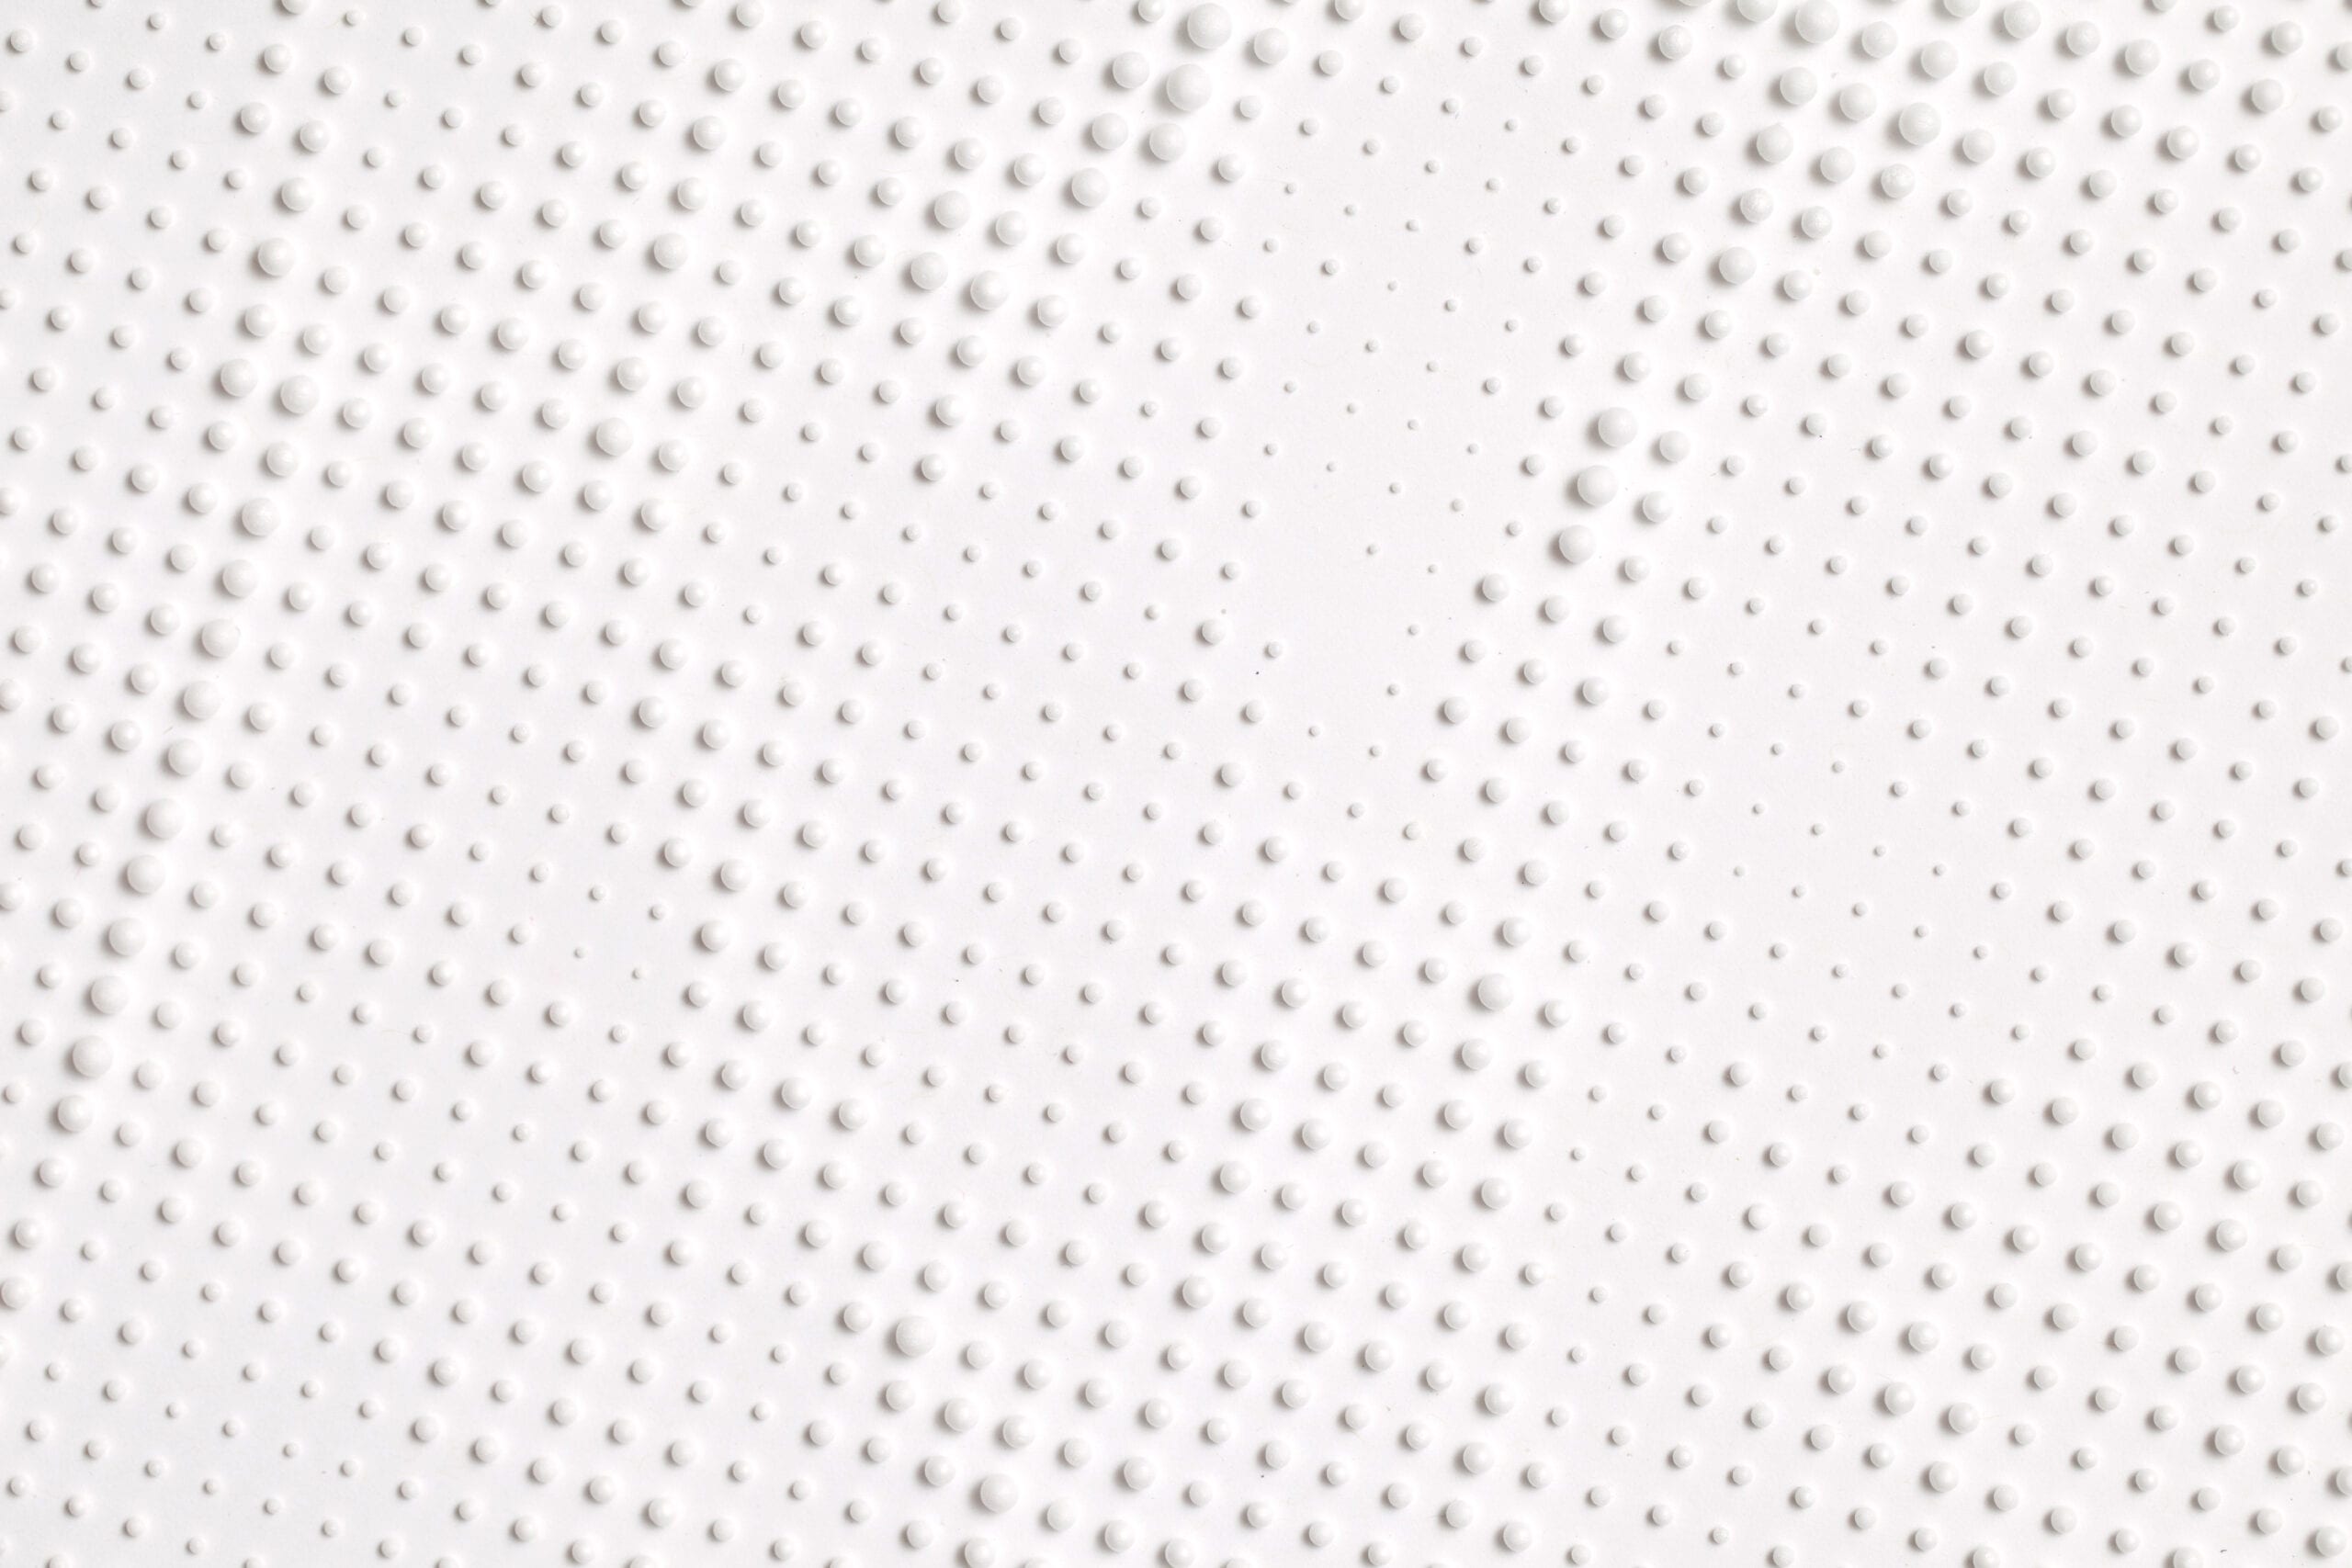 Gabriel de la Mora, 9,478 (Detalle) de la series Unicel, 9,478 bolitas de unicel sobre papel, 103.6 x 68.1 x 6 cm (Enmarcada), 2012.